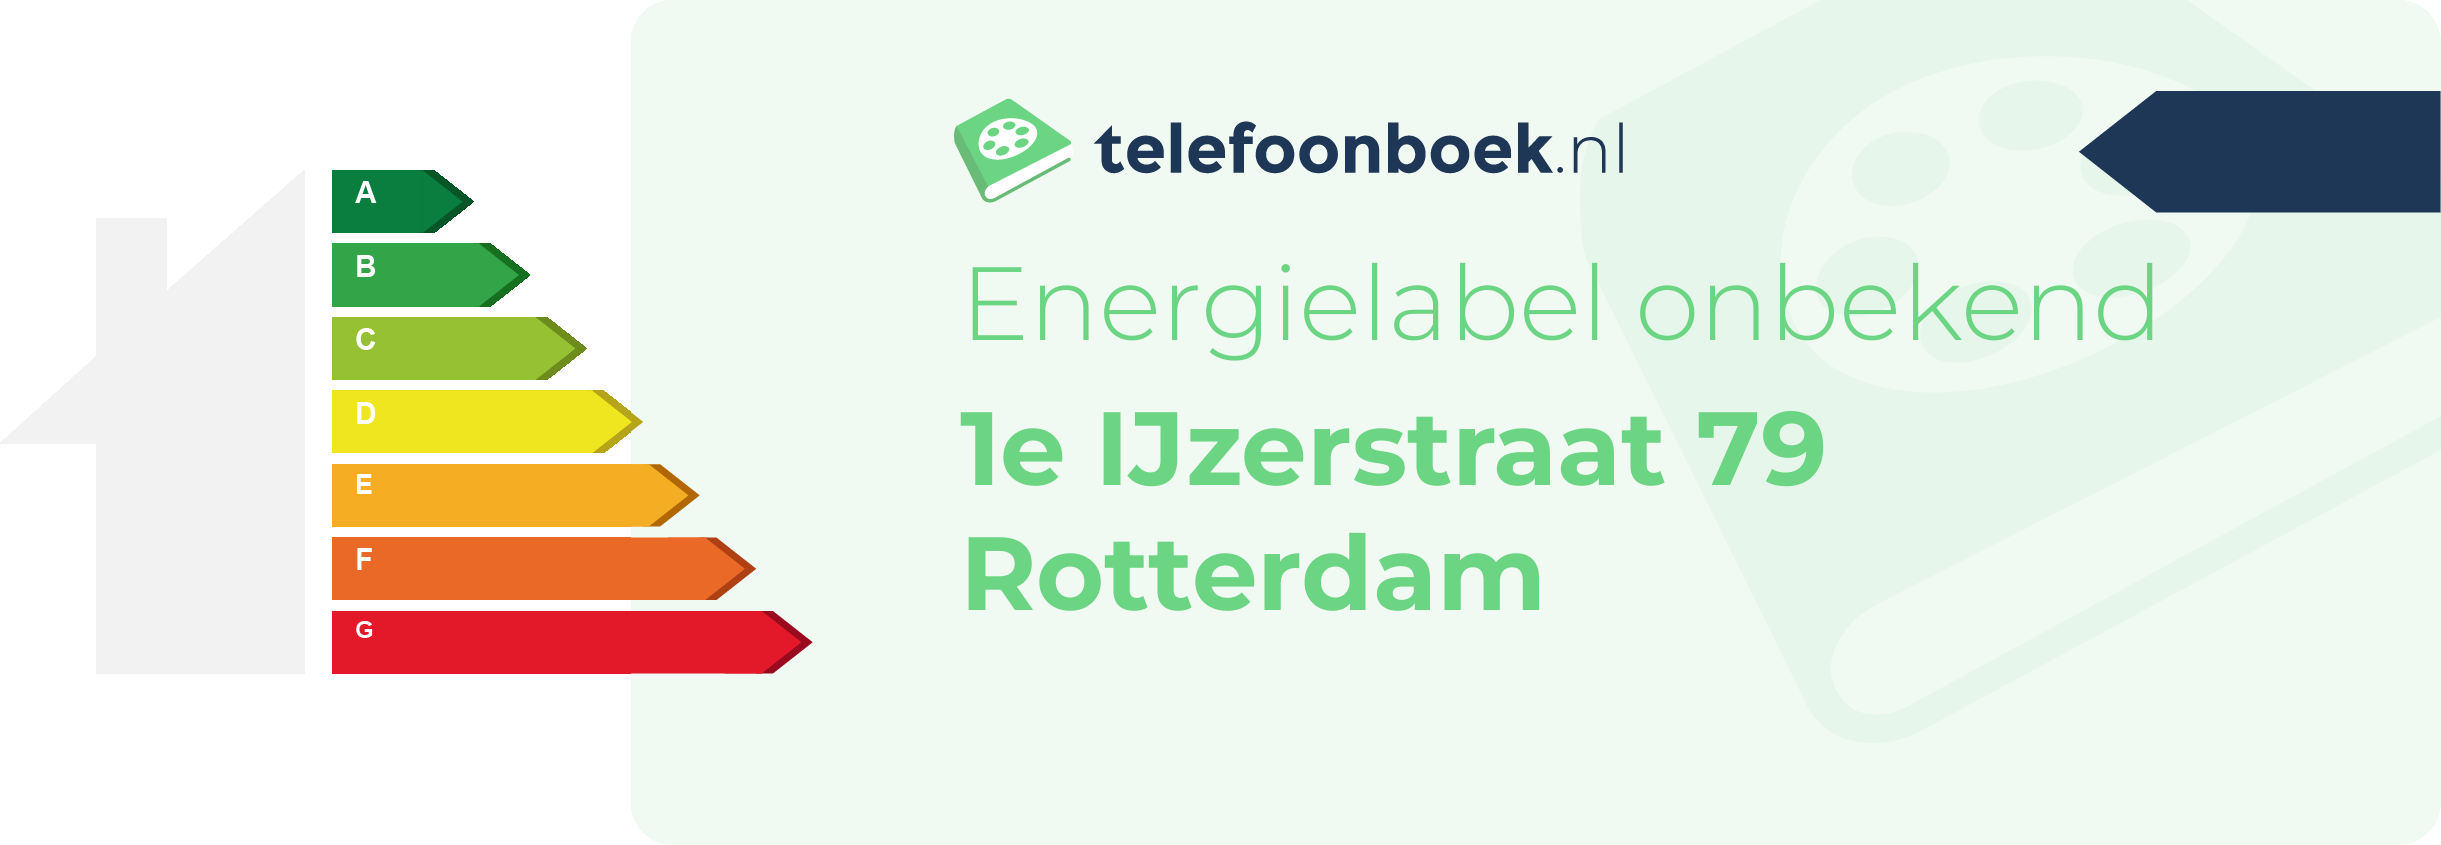 Energielabel 1e IJzerstraat 79 Rotterdam